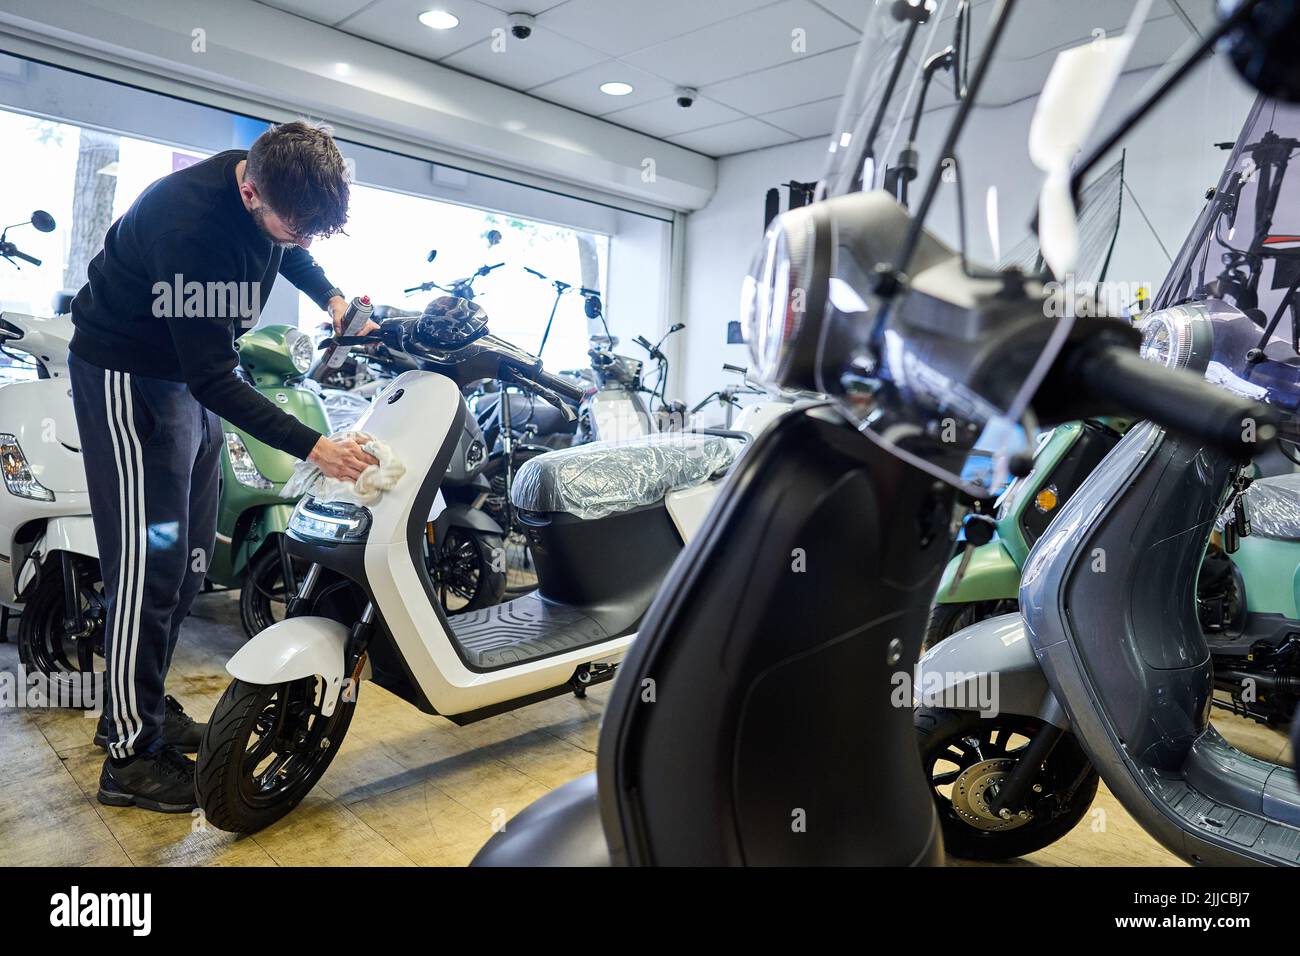 2022-07-25 12:42:08 ROTTERDAM - Elektro-Scooter in einem Geschäft. Zum ersten Mal werden mehr elektrische Mopeds verkauft als benzinbetriebene Mopeds. In der ersten Jahreshälfte waren mehr als die Hälfte der verkauften Mopeds elektrisch. ANP PHIL NIJHUIS niederlande Out - belgien Out Stockfoto